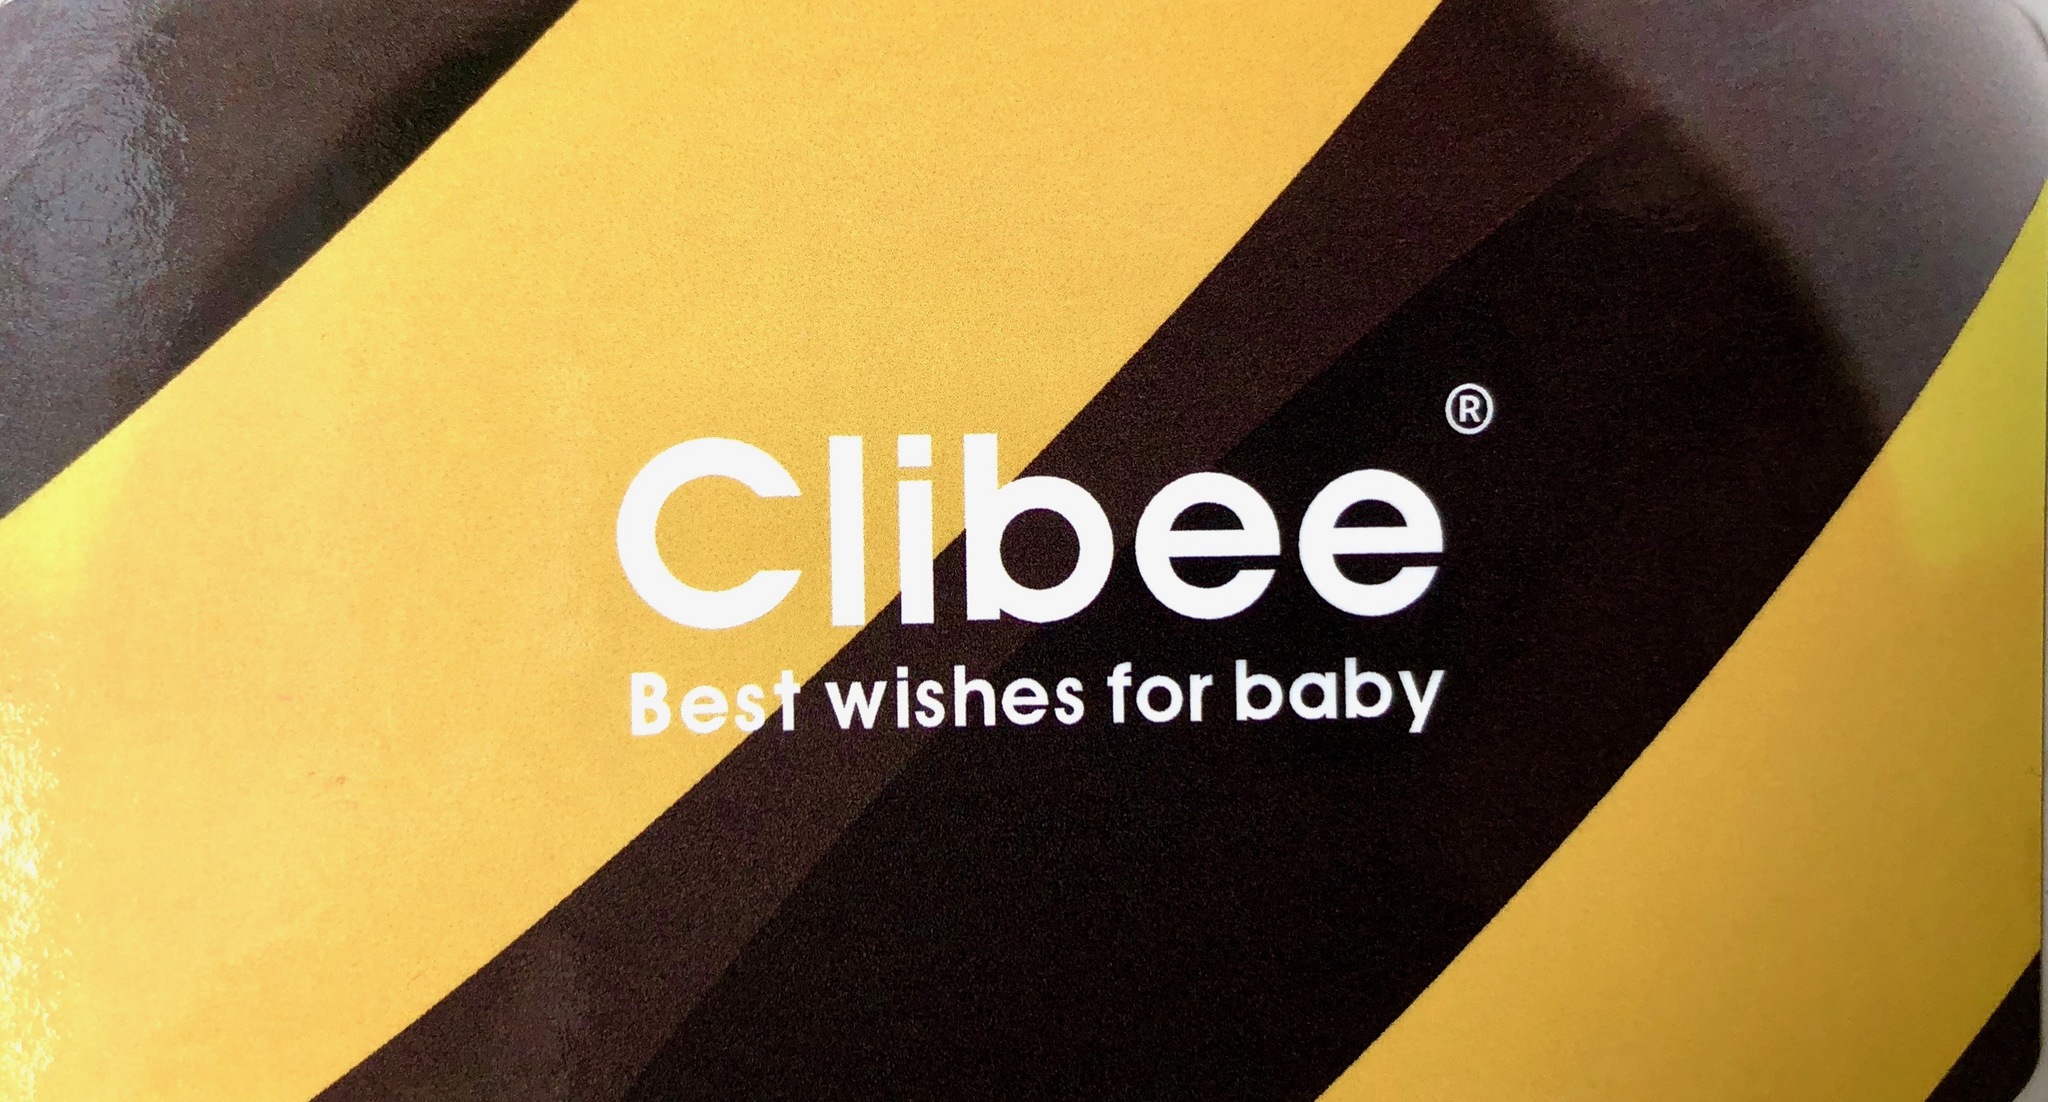 Детская обувь Clibee